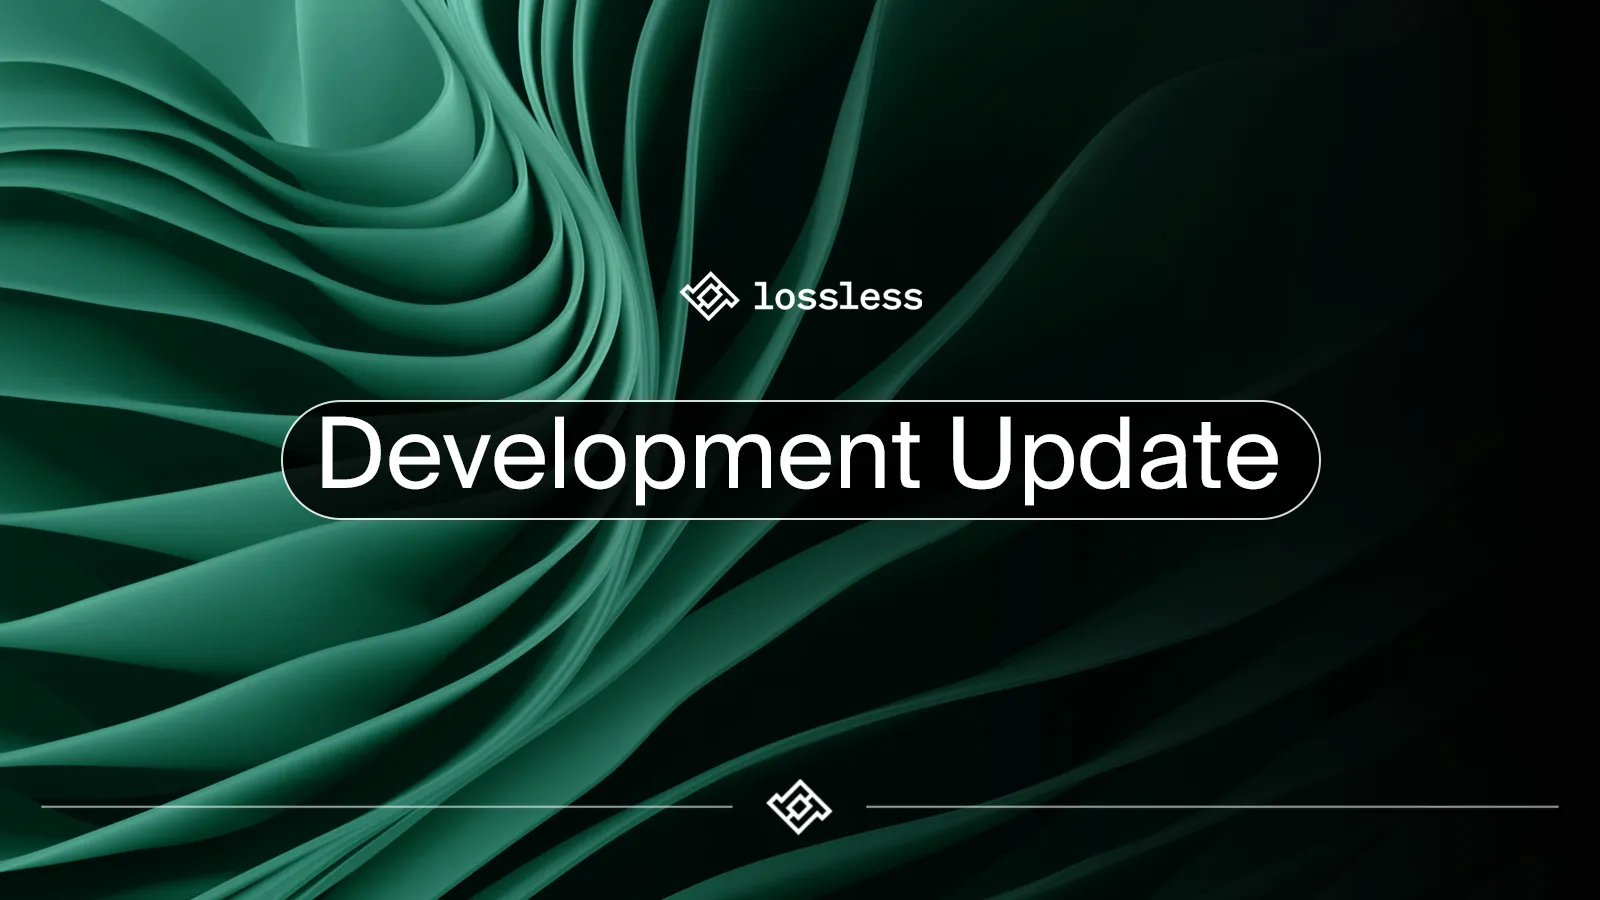 Development Update: What Happened Through January